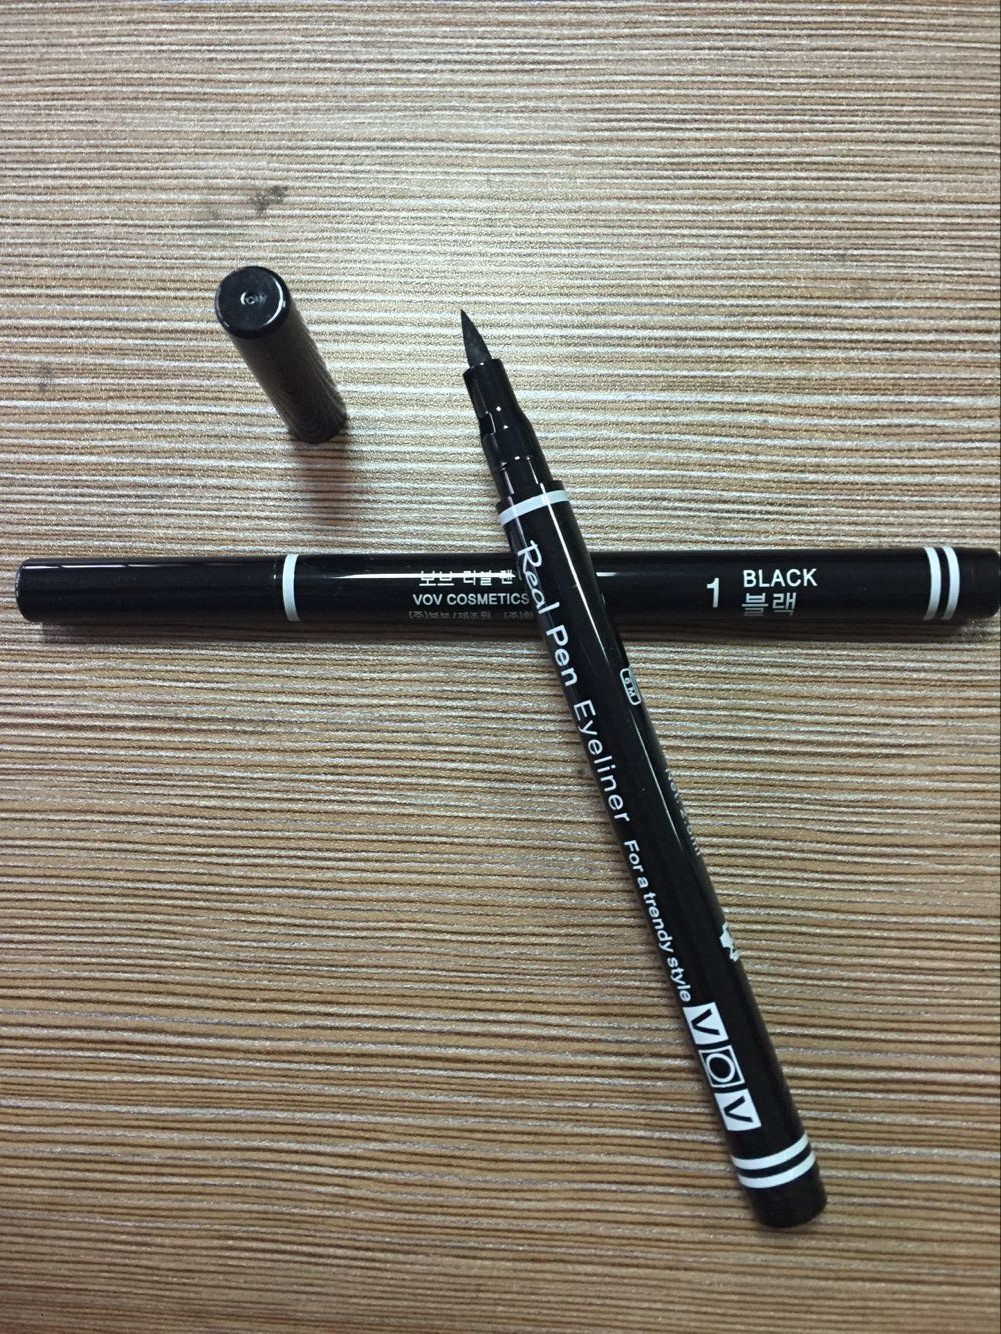 专业定制生产化妆笔包材OEM自动眉笔眼线笔包材图片